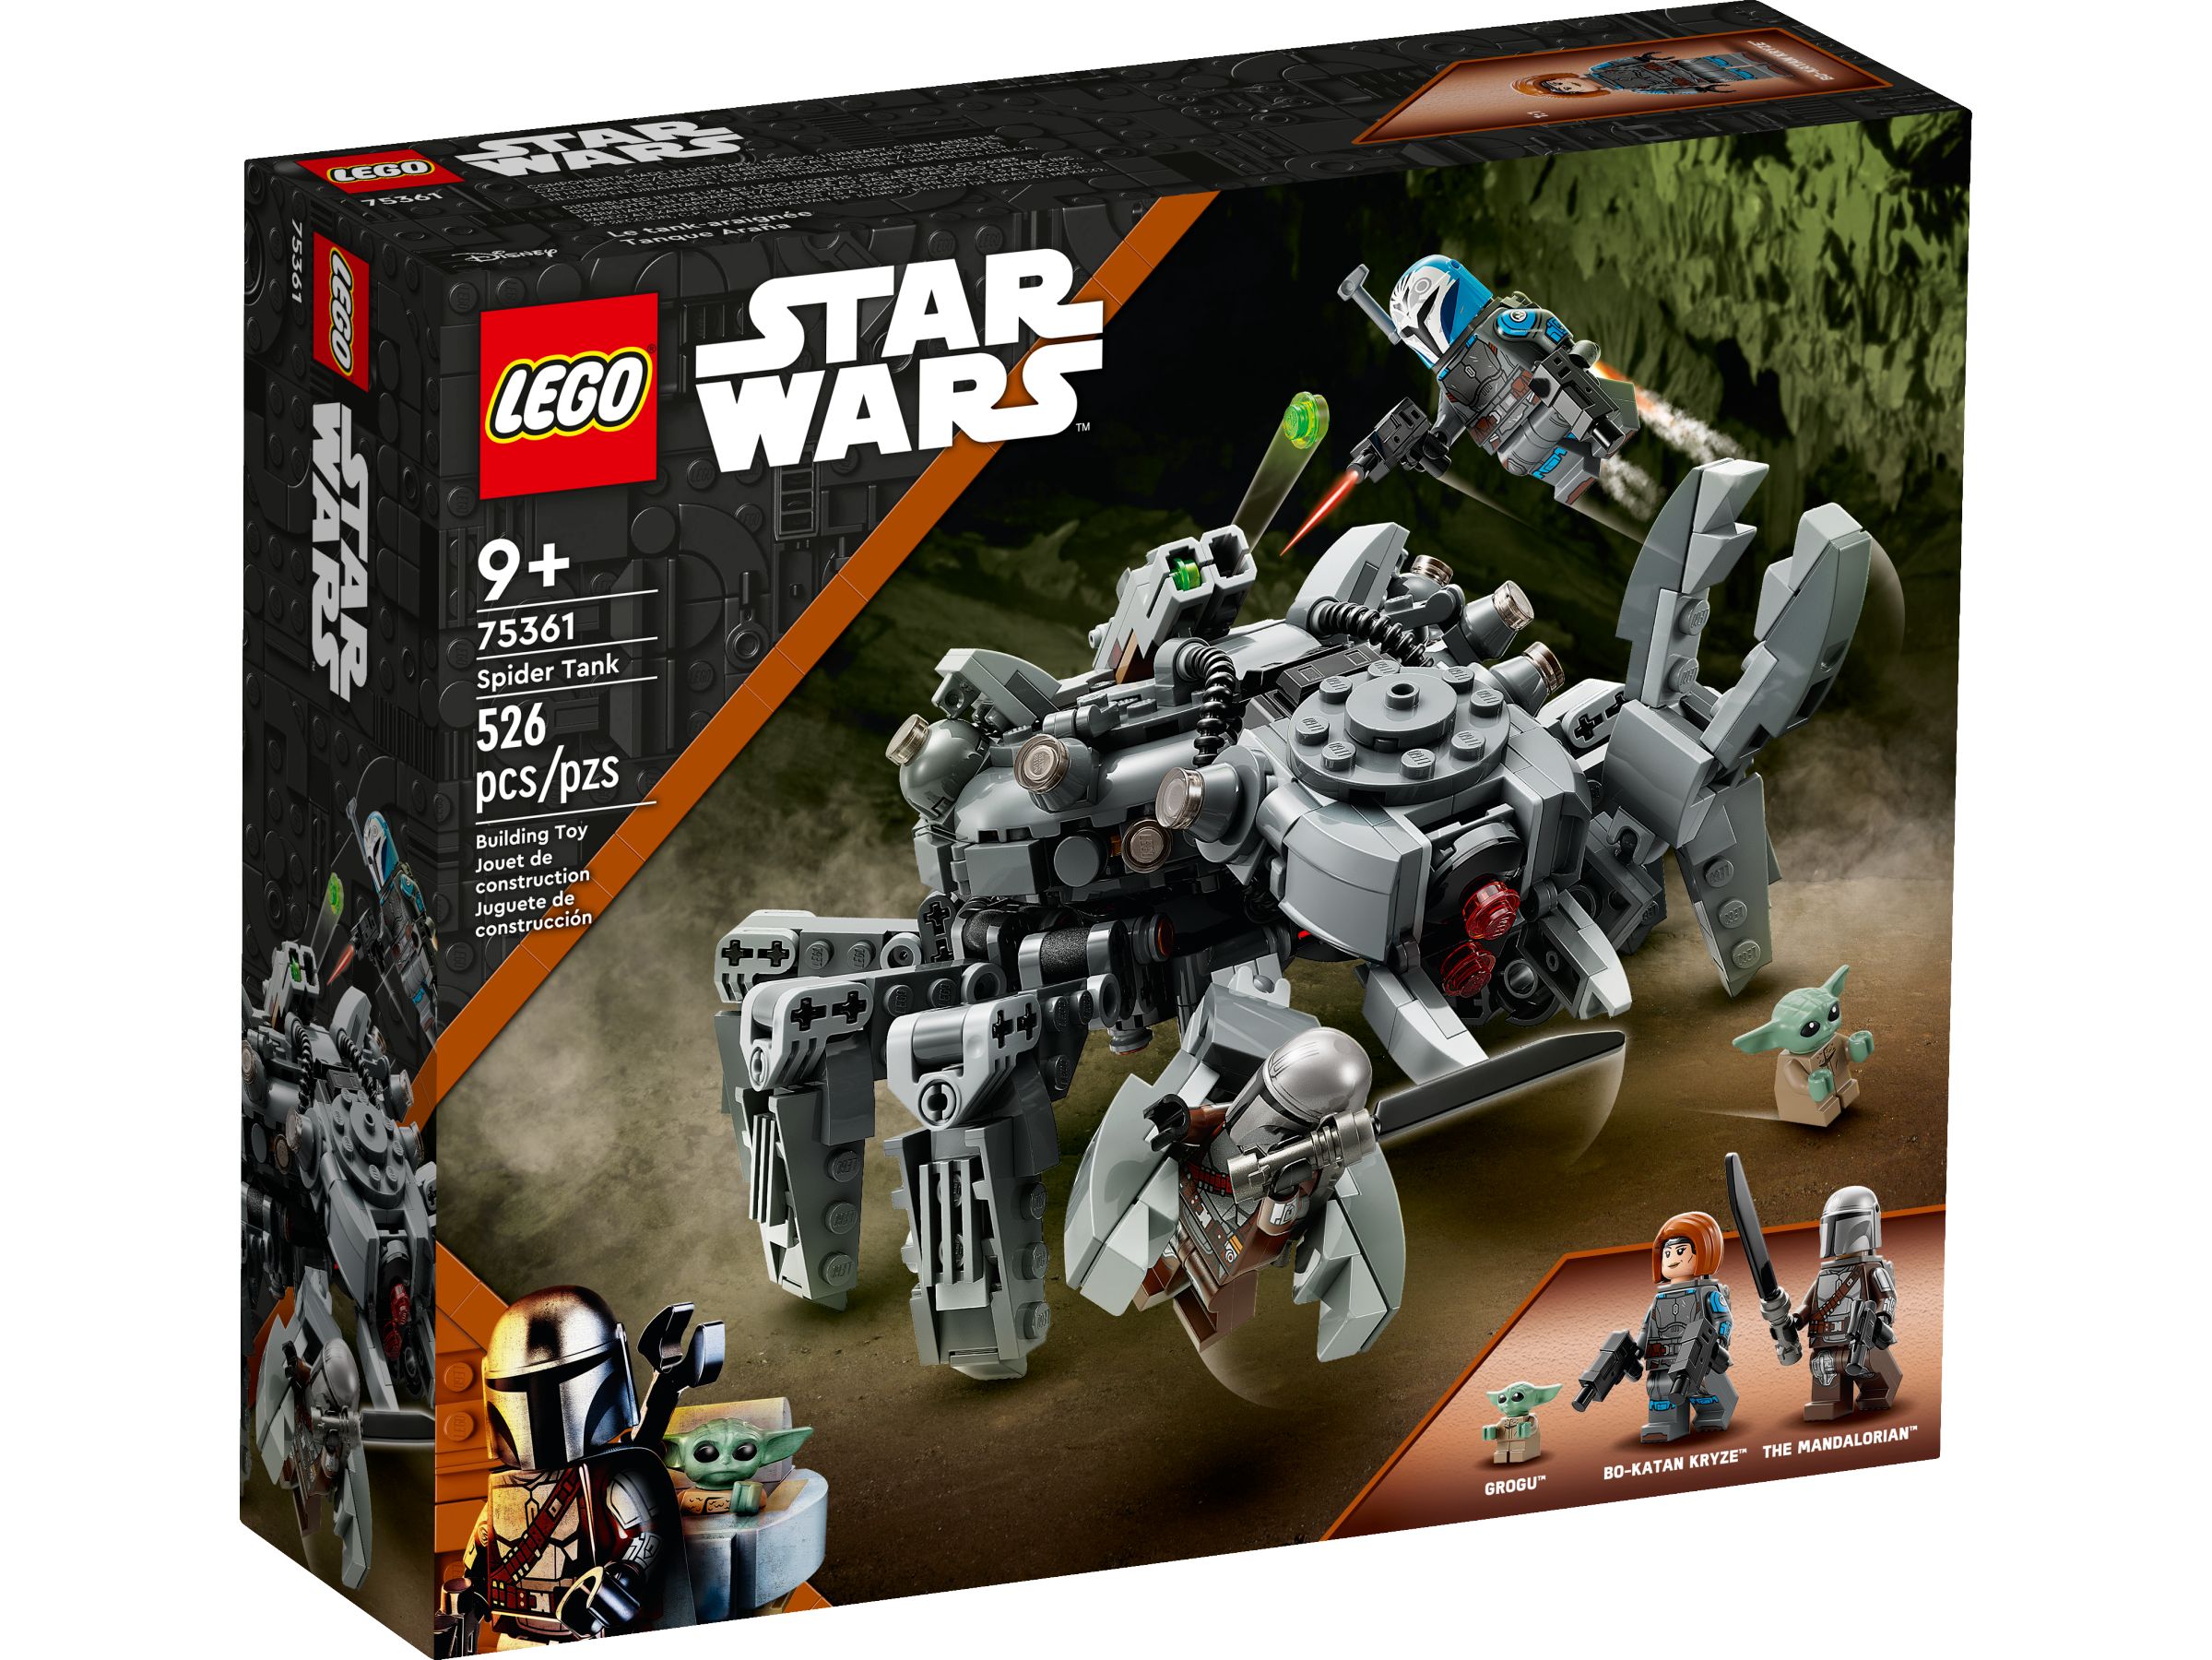 LEGO Star Wars 75361 Spinnenpanzer LEGO_75361_Box1_v39.jpg